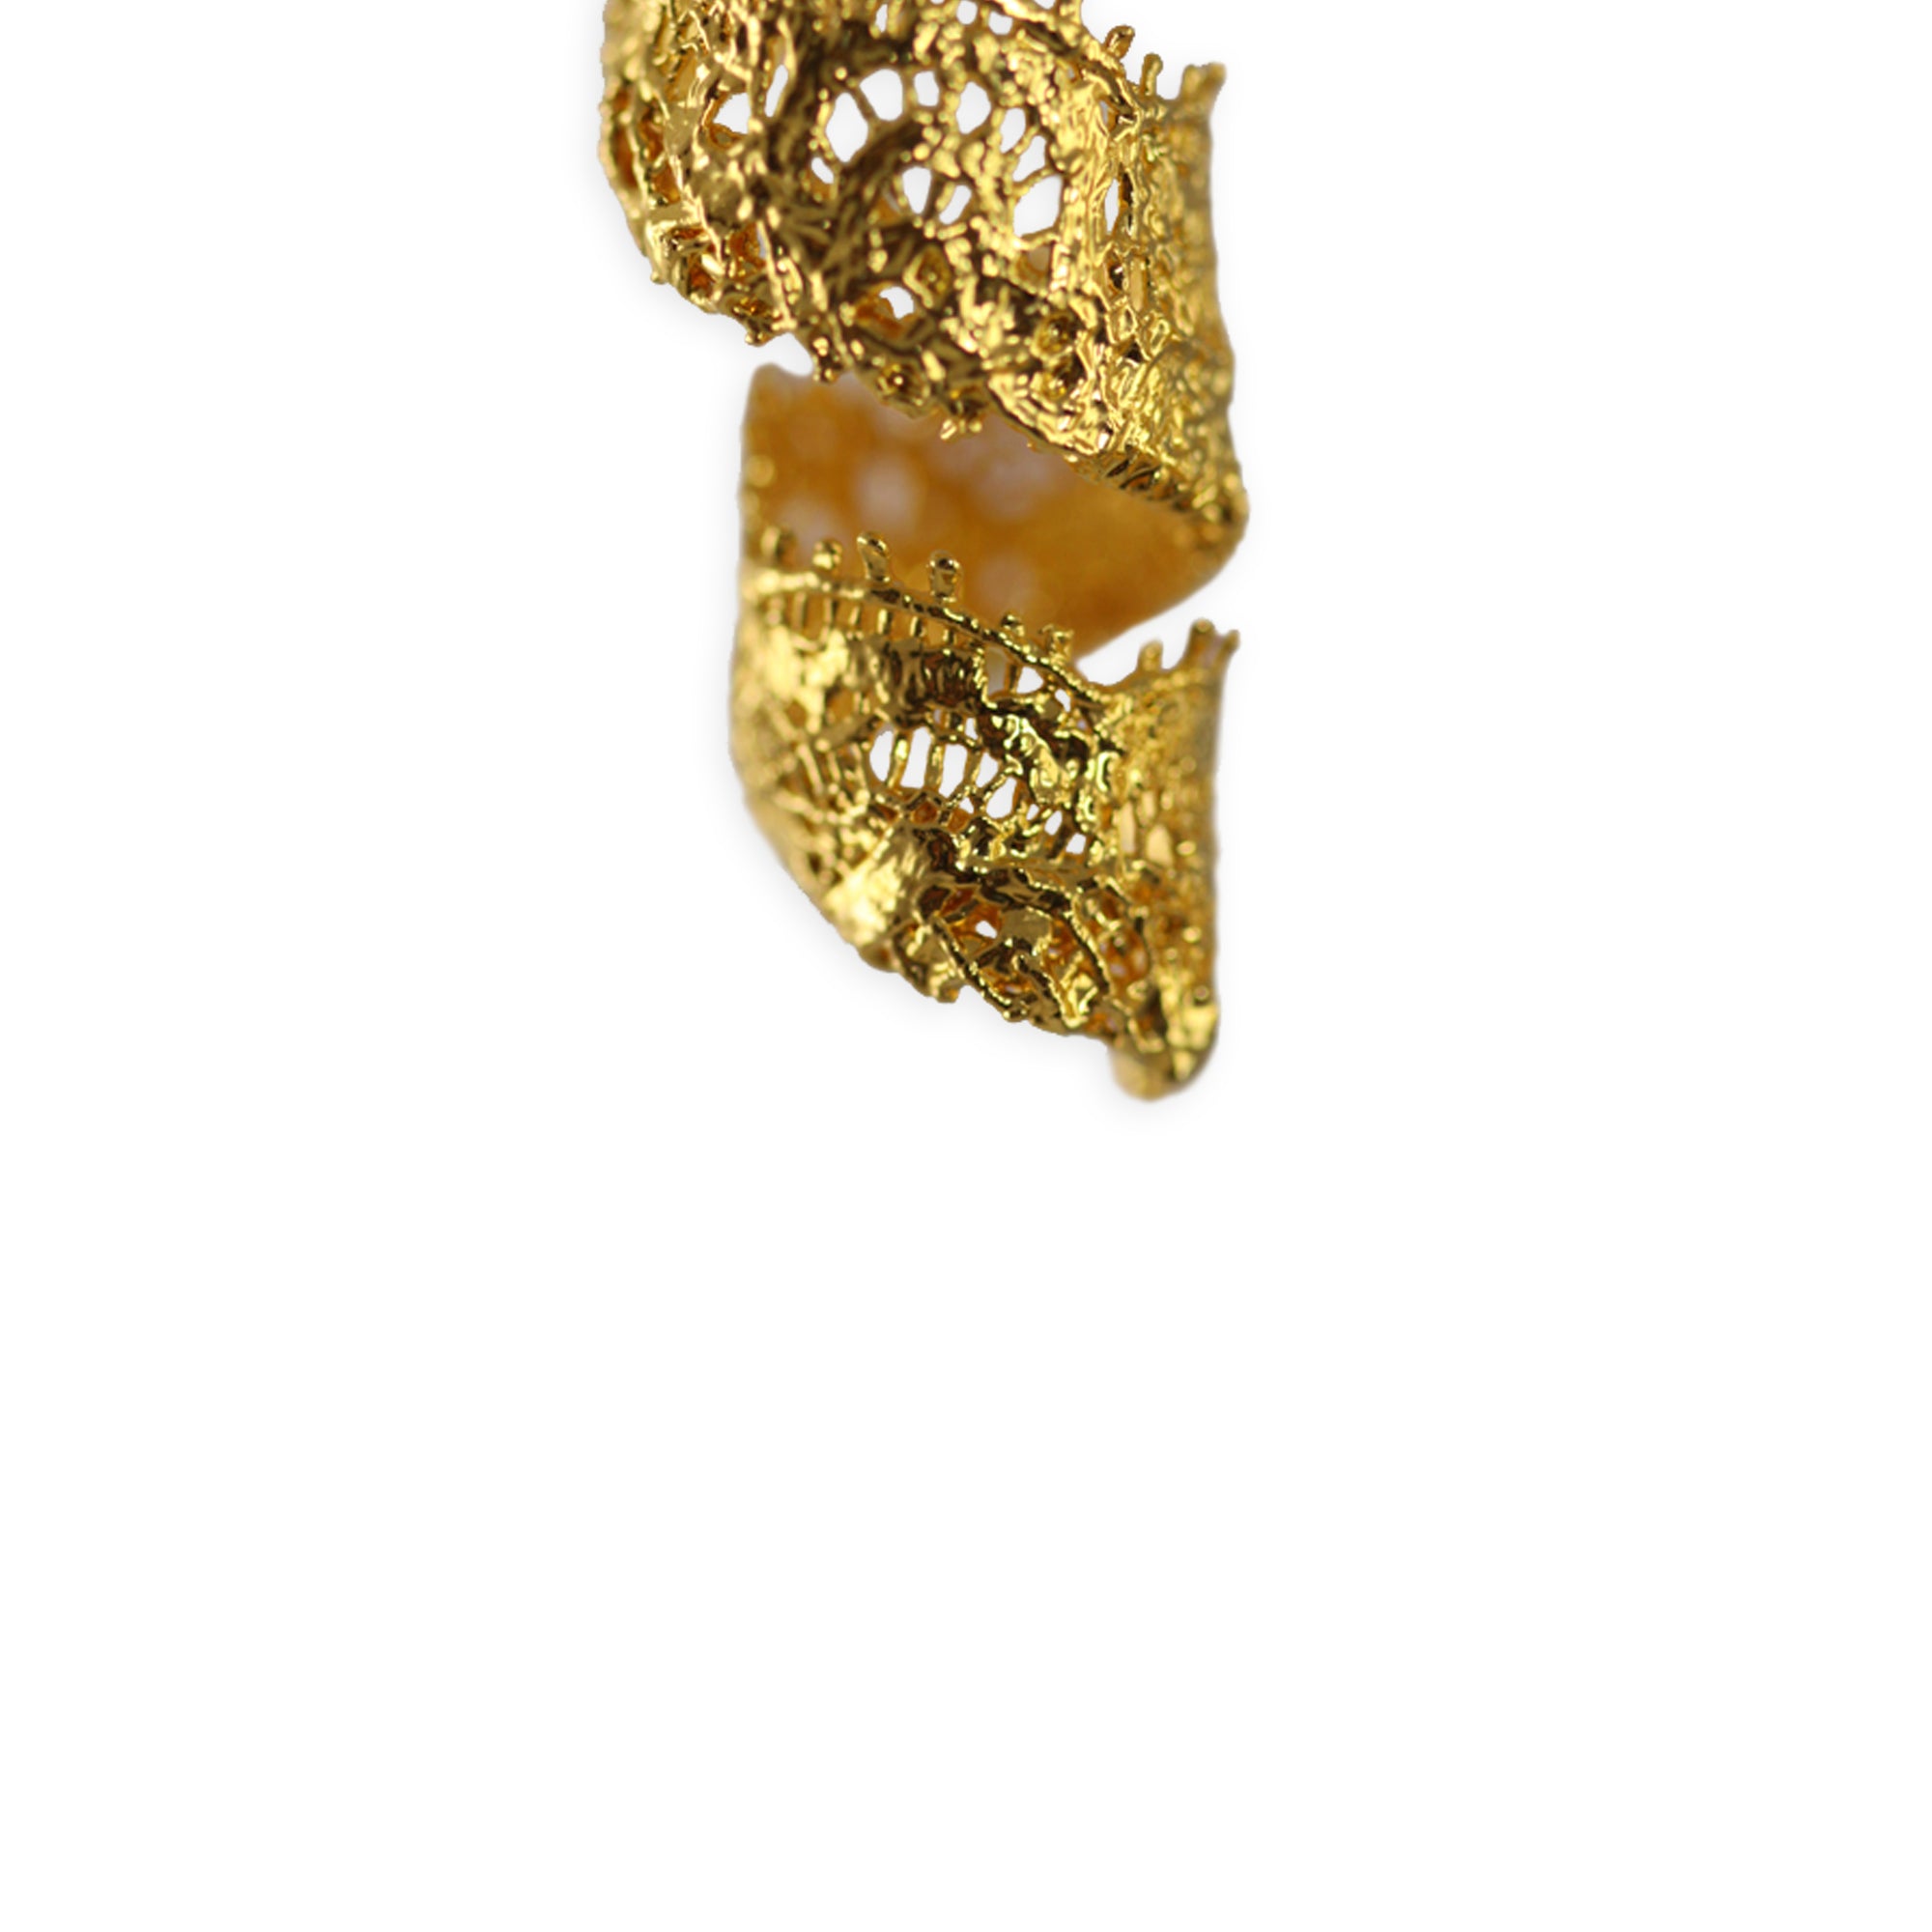 Azeline lace swirl earrings in 24k gold.